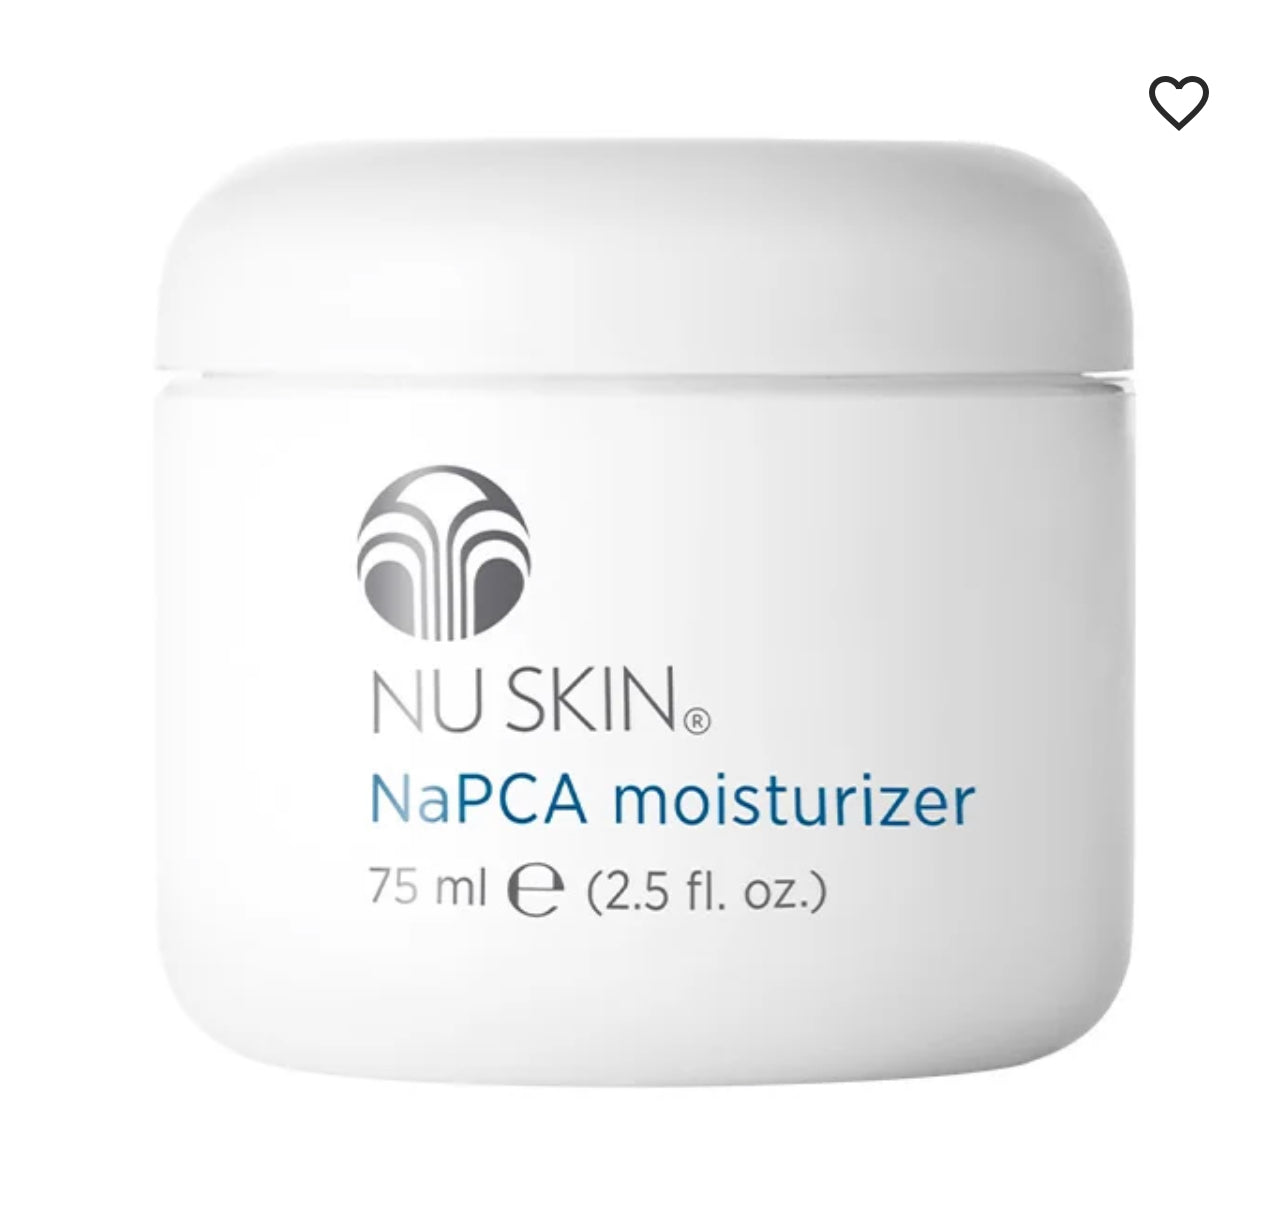 NAPCA moisturizer